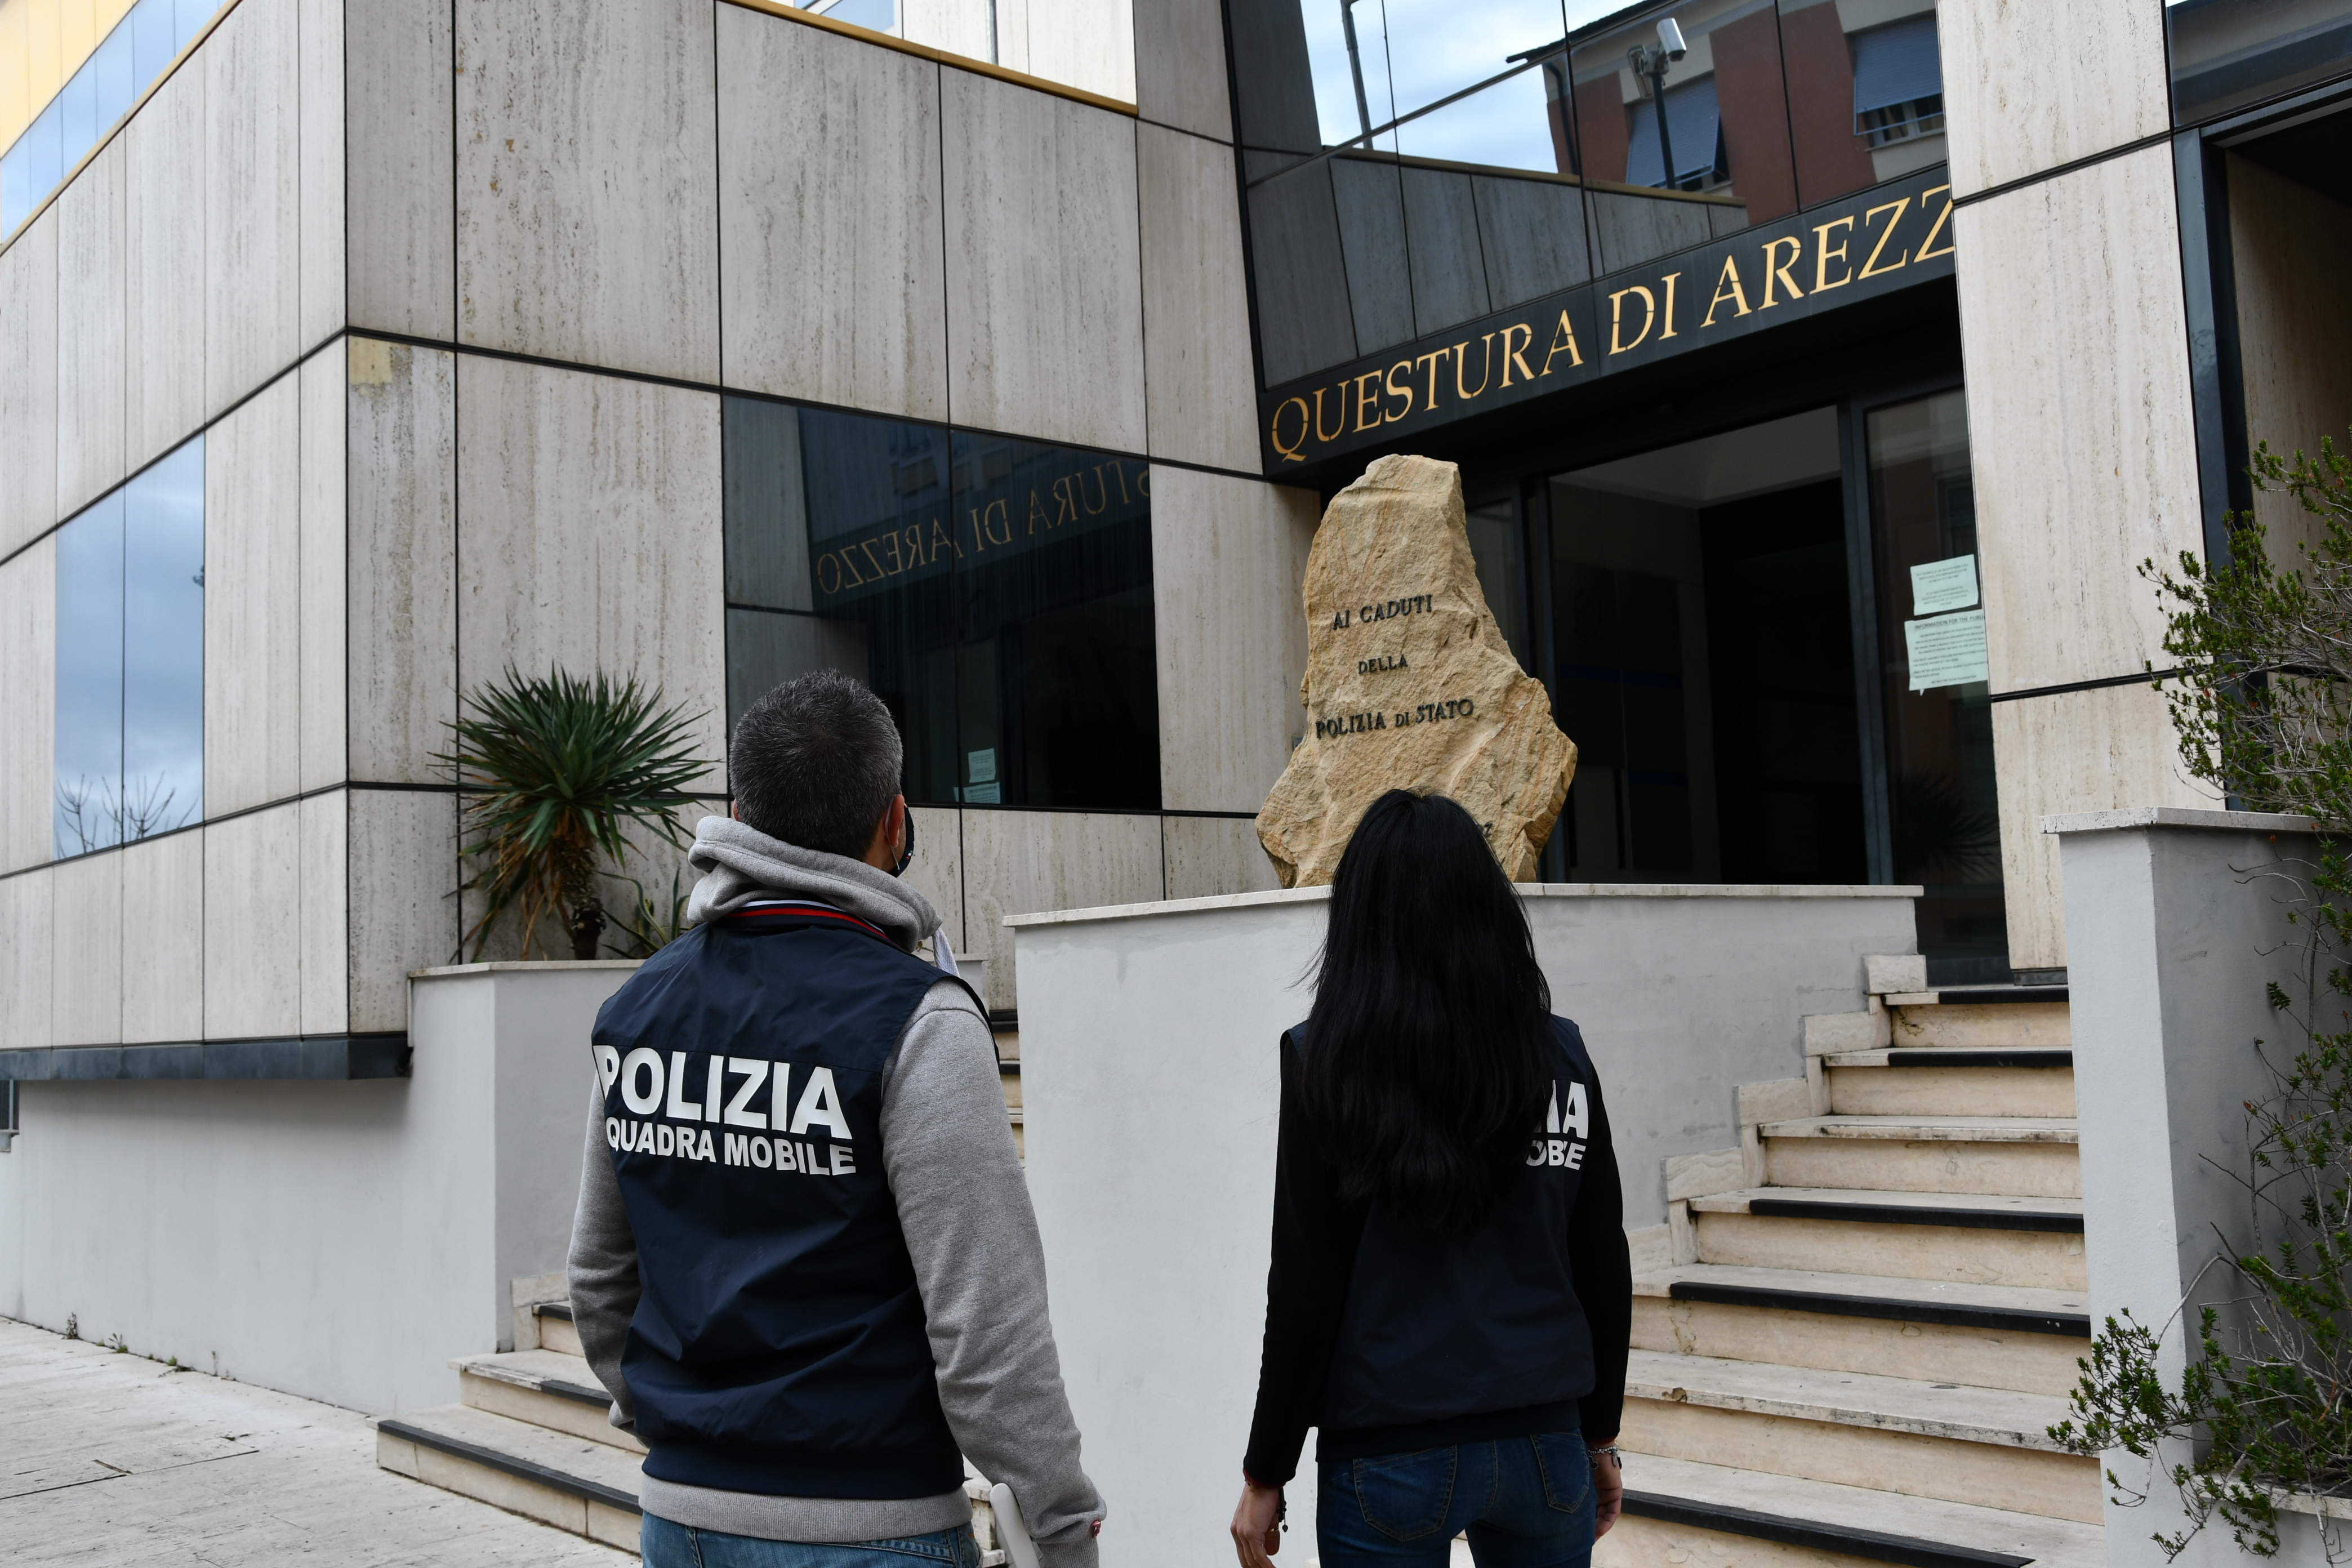 La Polizia di Stato esegue con l’ausilio della Polizia Municipale di Arezzo  l’ordinanza di custodia cautelare  in carcere nei confronti di uno dei membri della nota baby gang: “famiglia Montana”